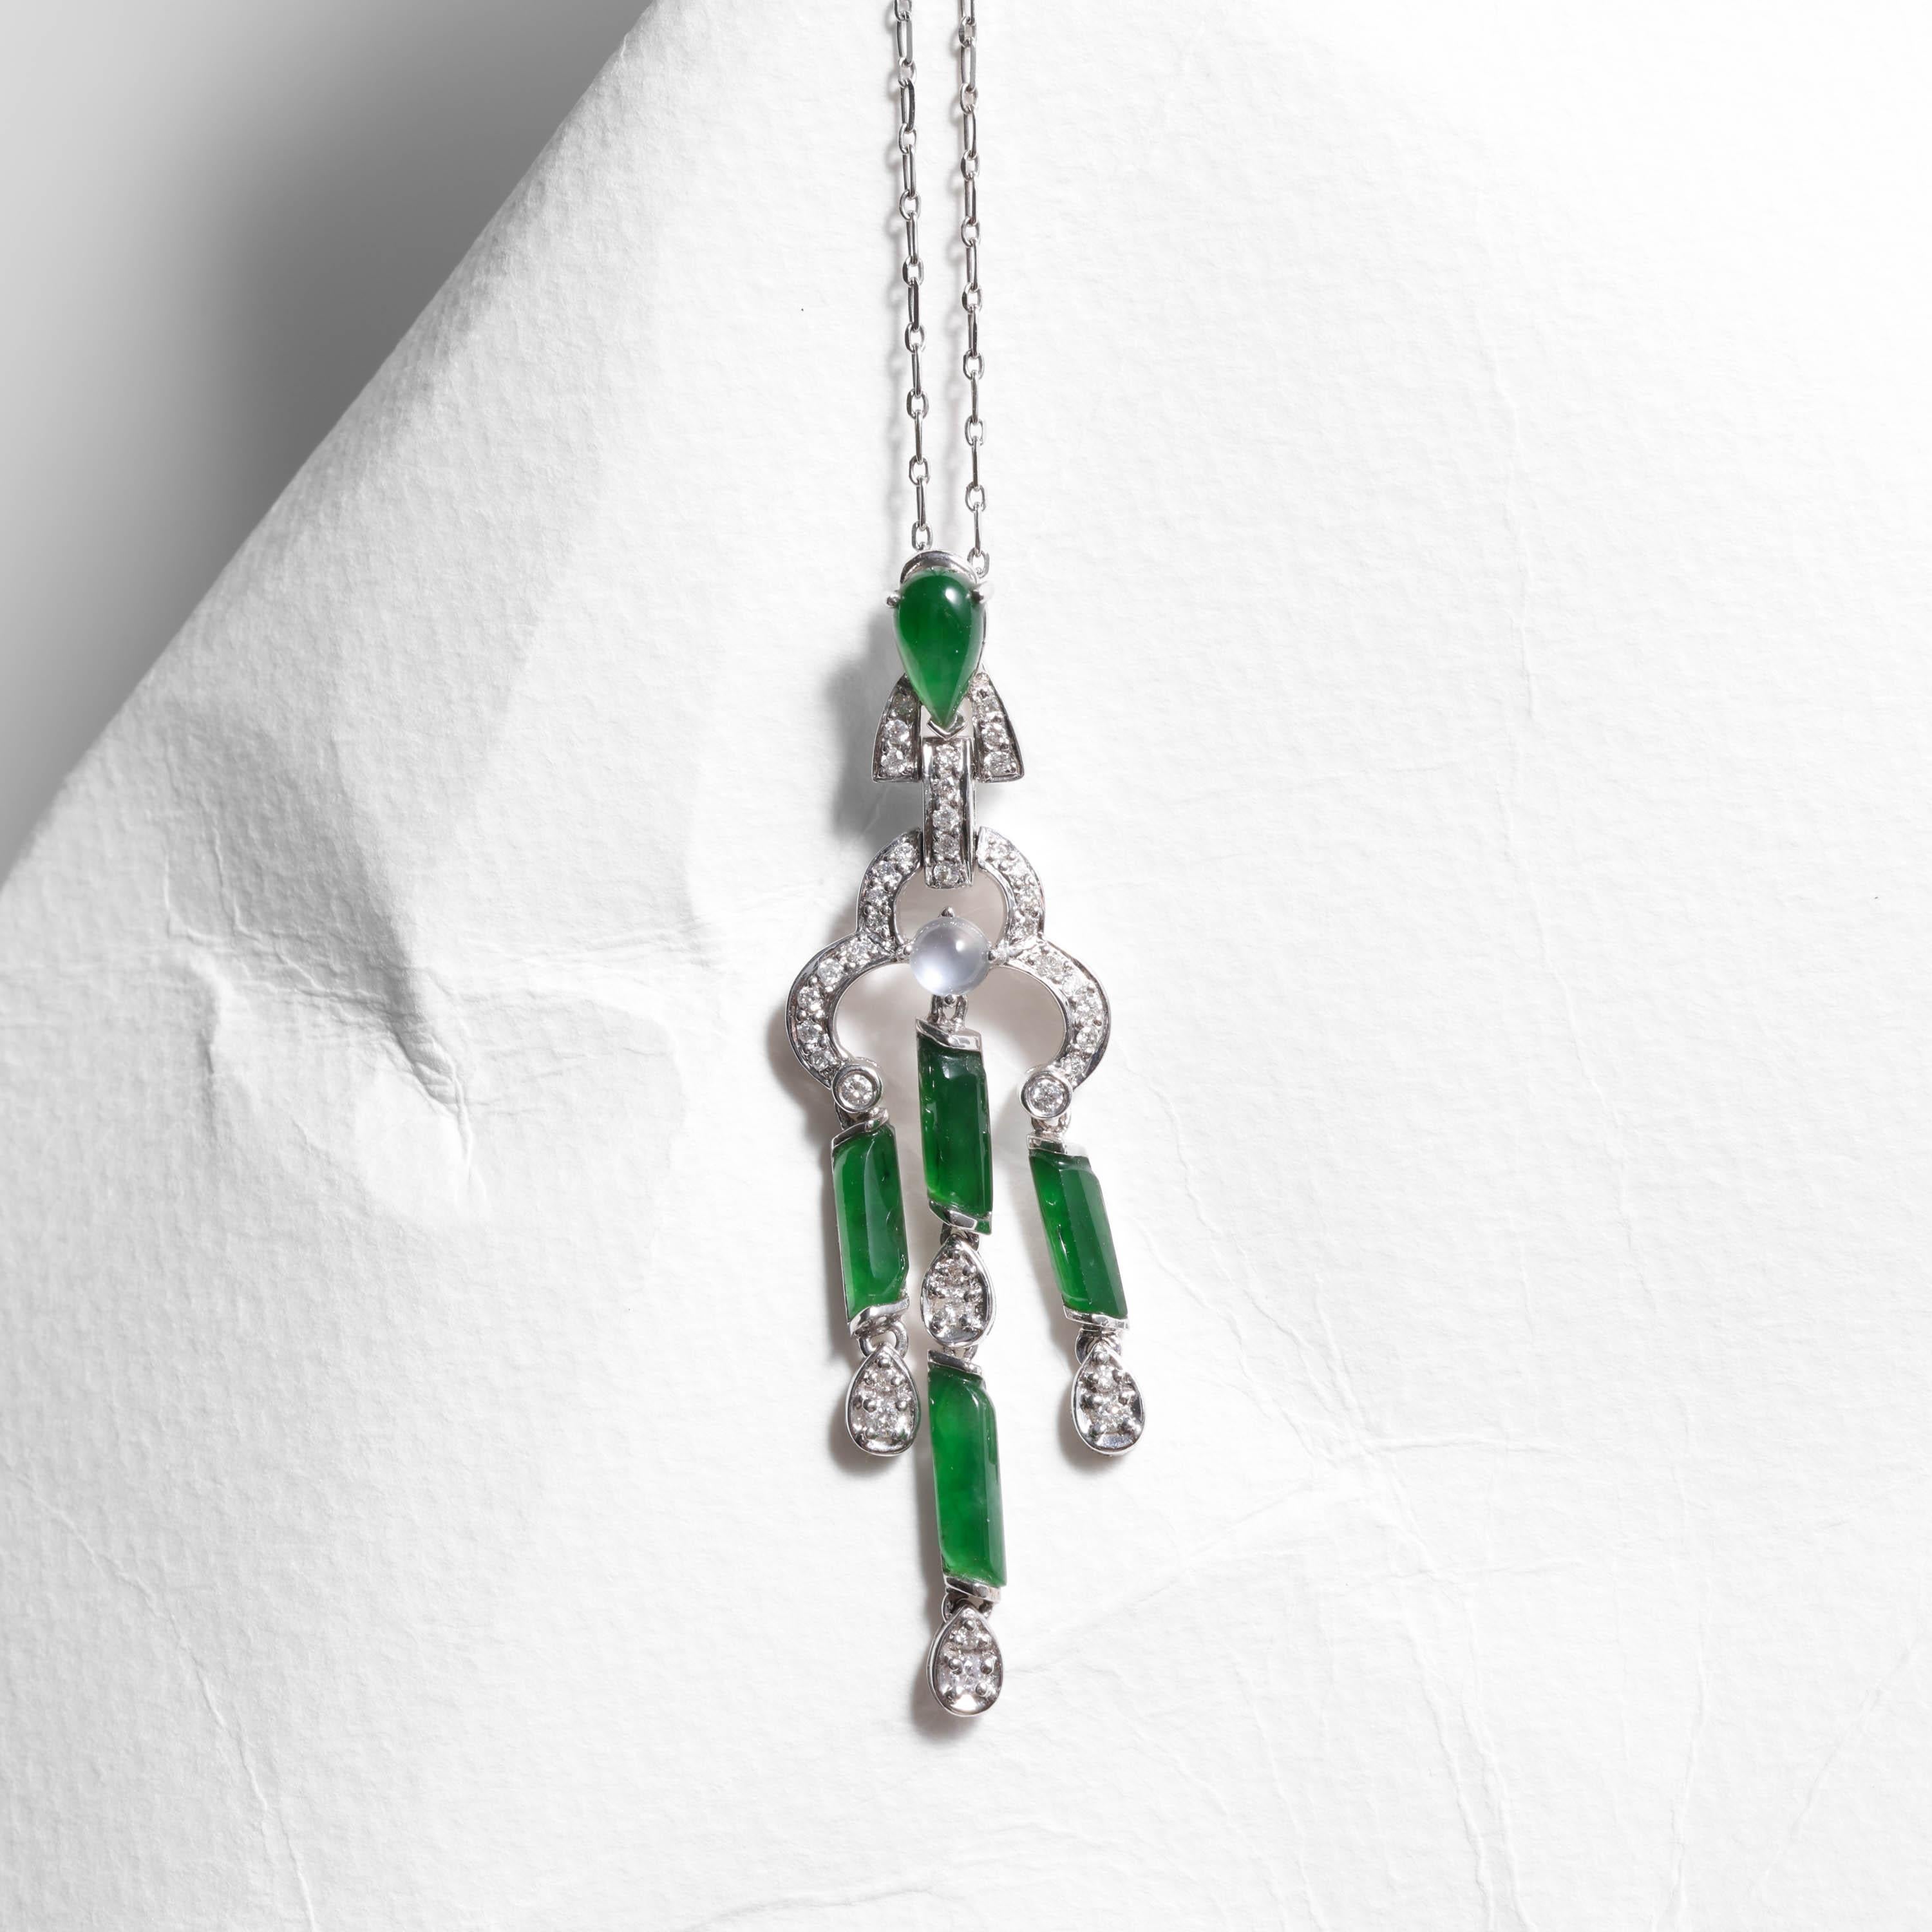 Ce charmant pendentif unique en son genre ressemble à une houppe en or blanc 18 carats et en jade impérial ; les cabochons allongés de forme libre en jade vert vitreux pendent librement, tout comme les diamants suspendus au jade. Le résultat est un